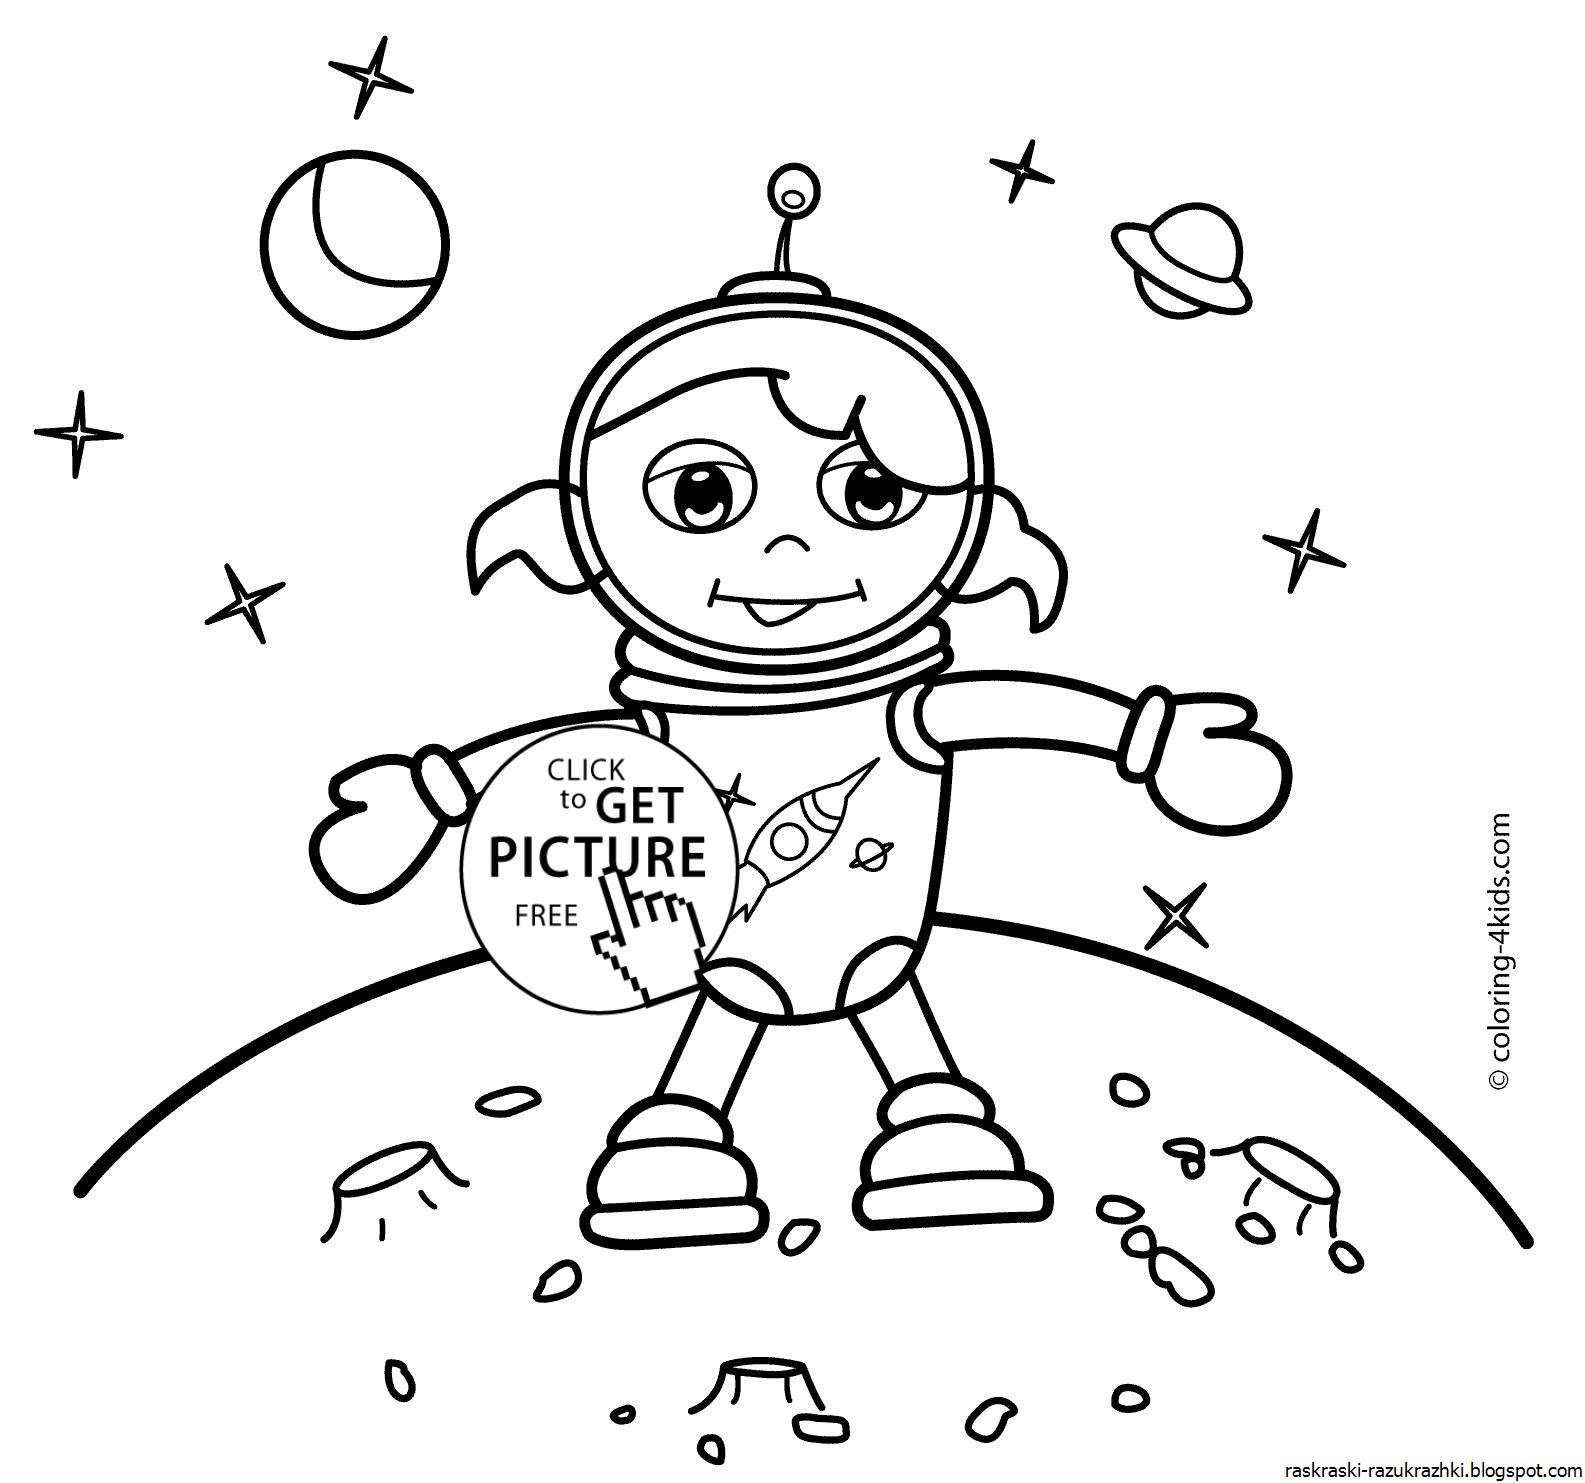 Раскраски к дню космонавтики для детей распечатать. Раскраска. В космосе. Космос раскраска для детей. Раскраска для малышей. Космос. Космические раскраски для детей.